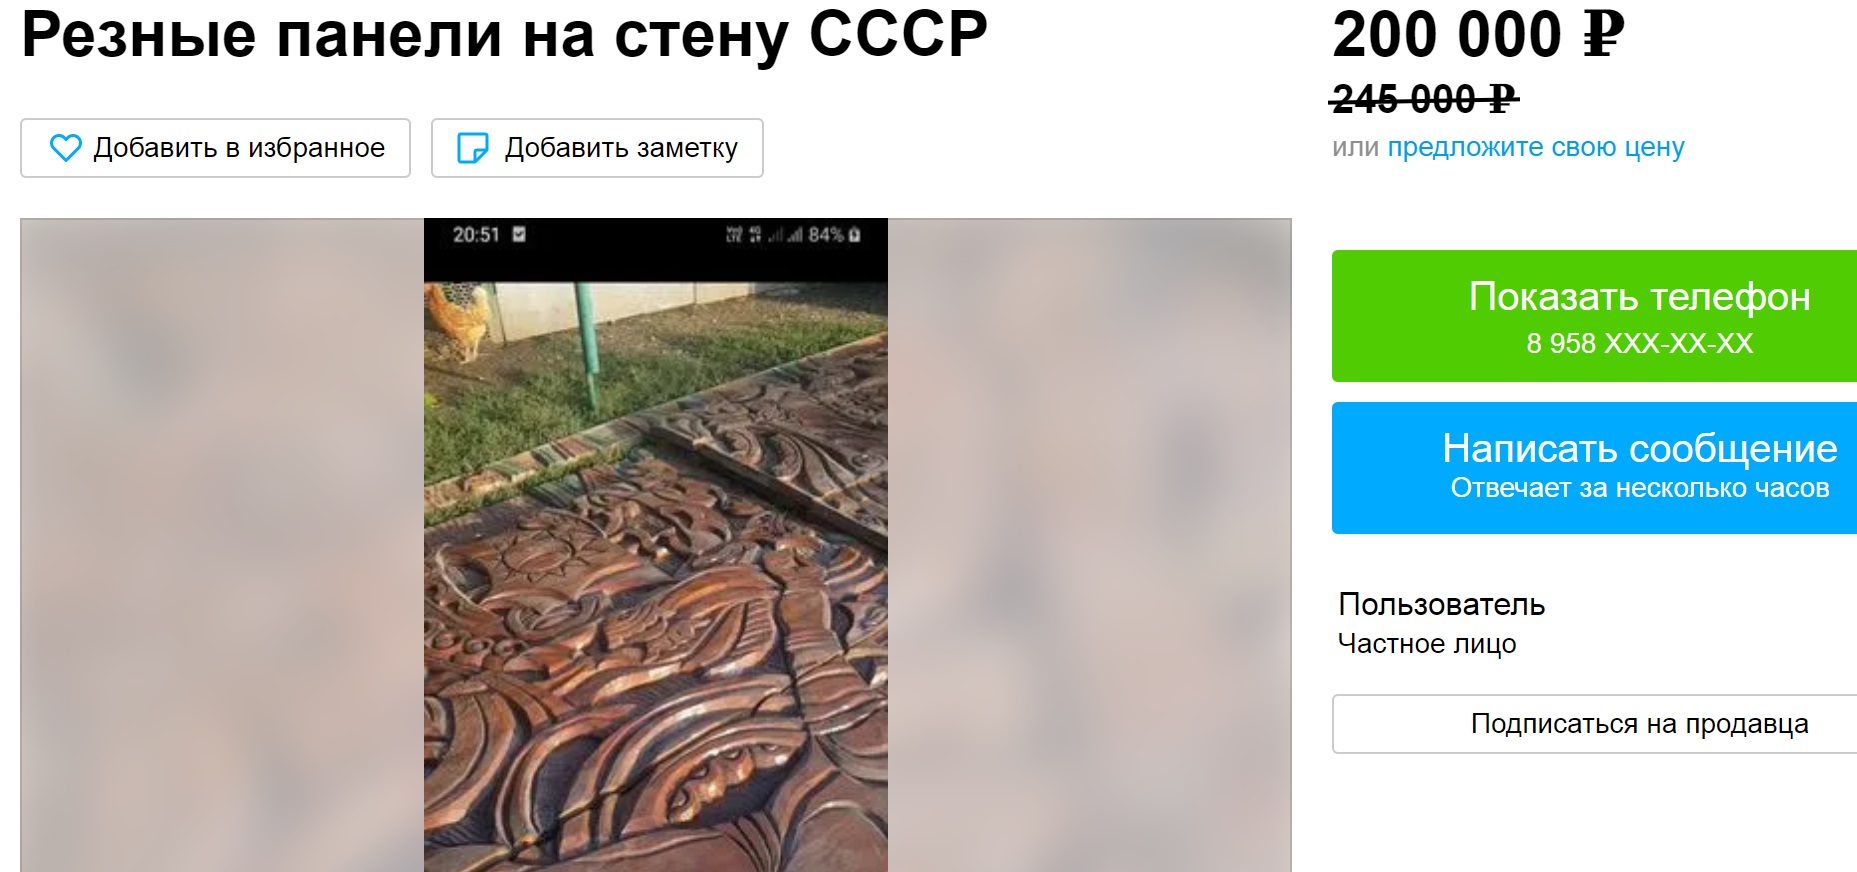 В Новороссийске продают культовое настенное панно времен СССР